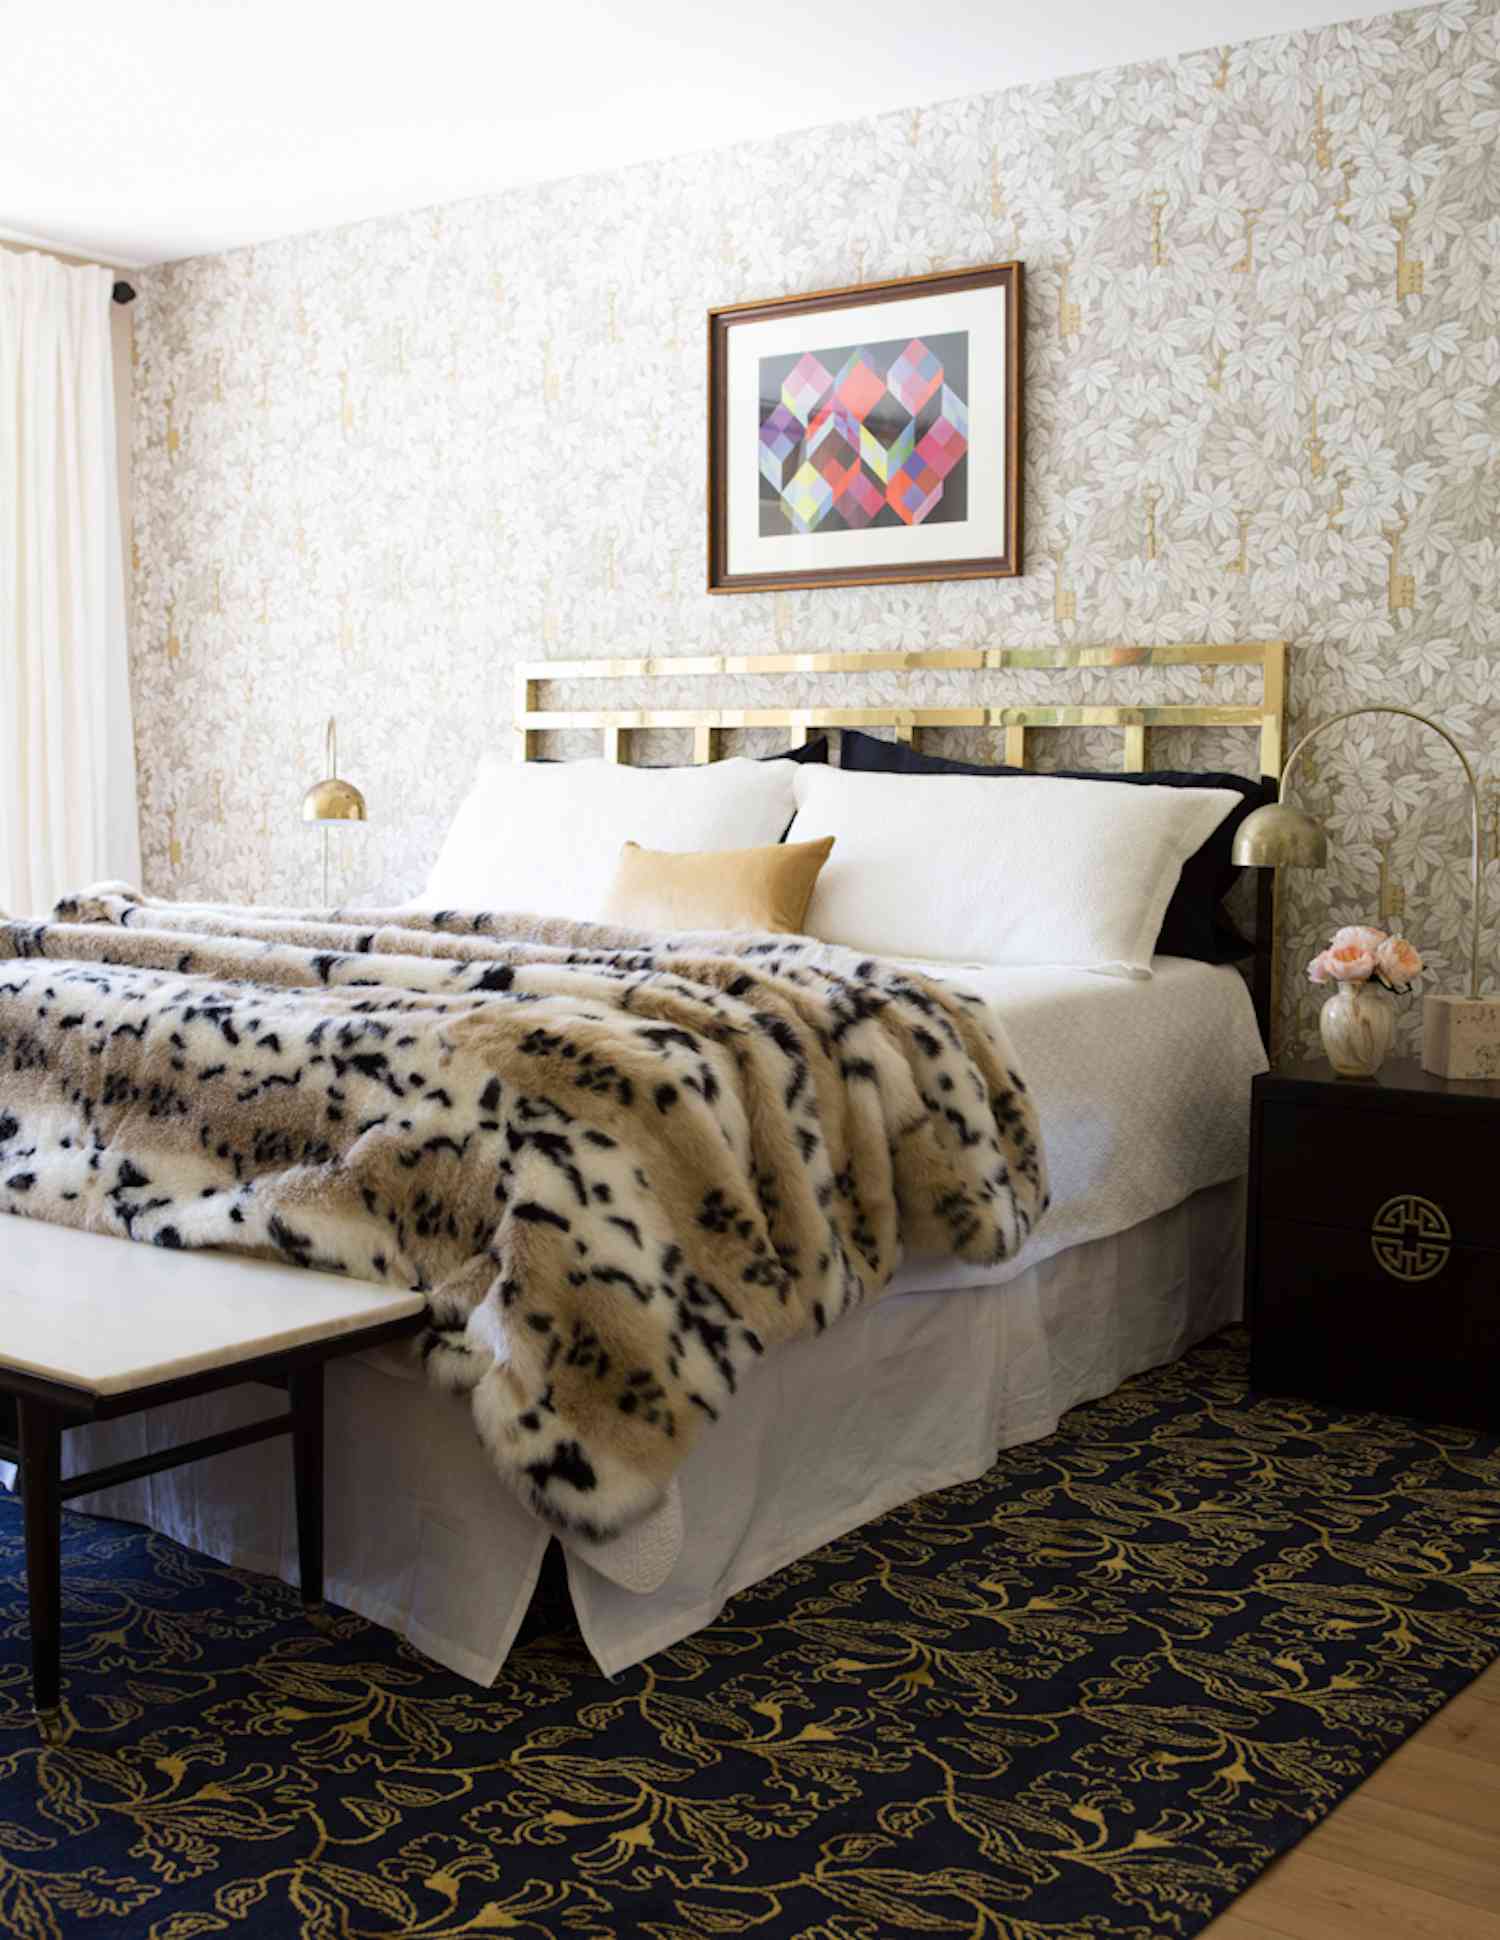 quarto moderno com manta de pele com estampa de leopardo, cabeceira dourada, detalhes em bronze e bege, glam